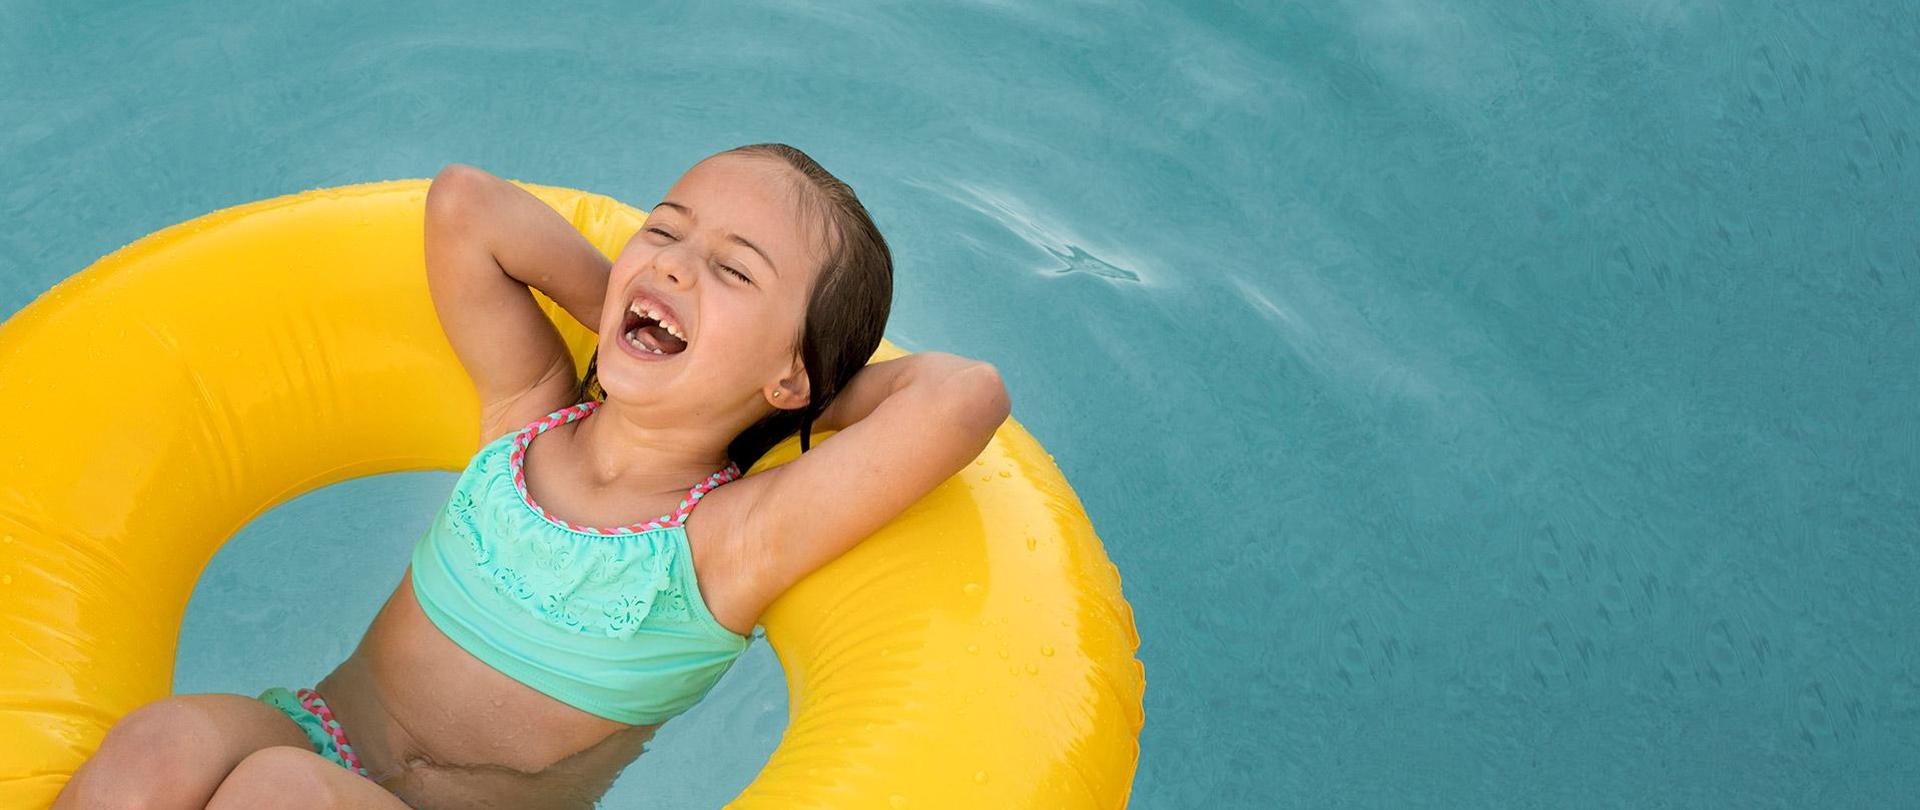 Roześmiana dziewczynka pływa w dmuchanym kole w basenie.